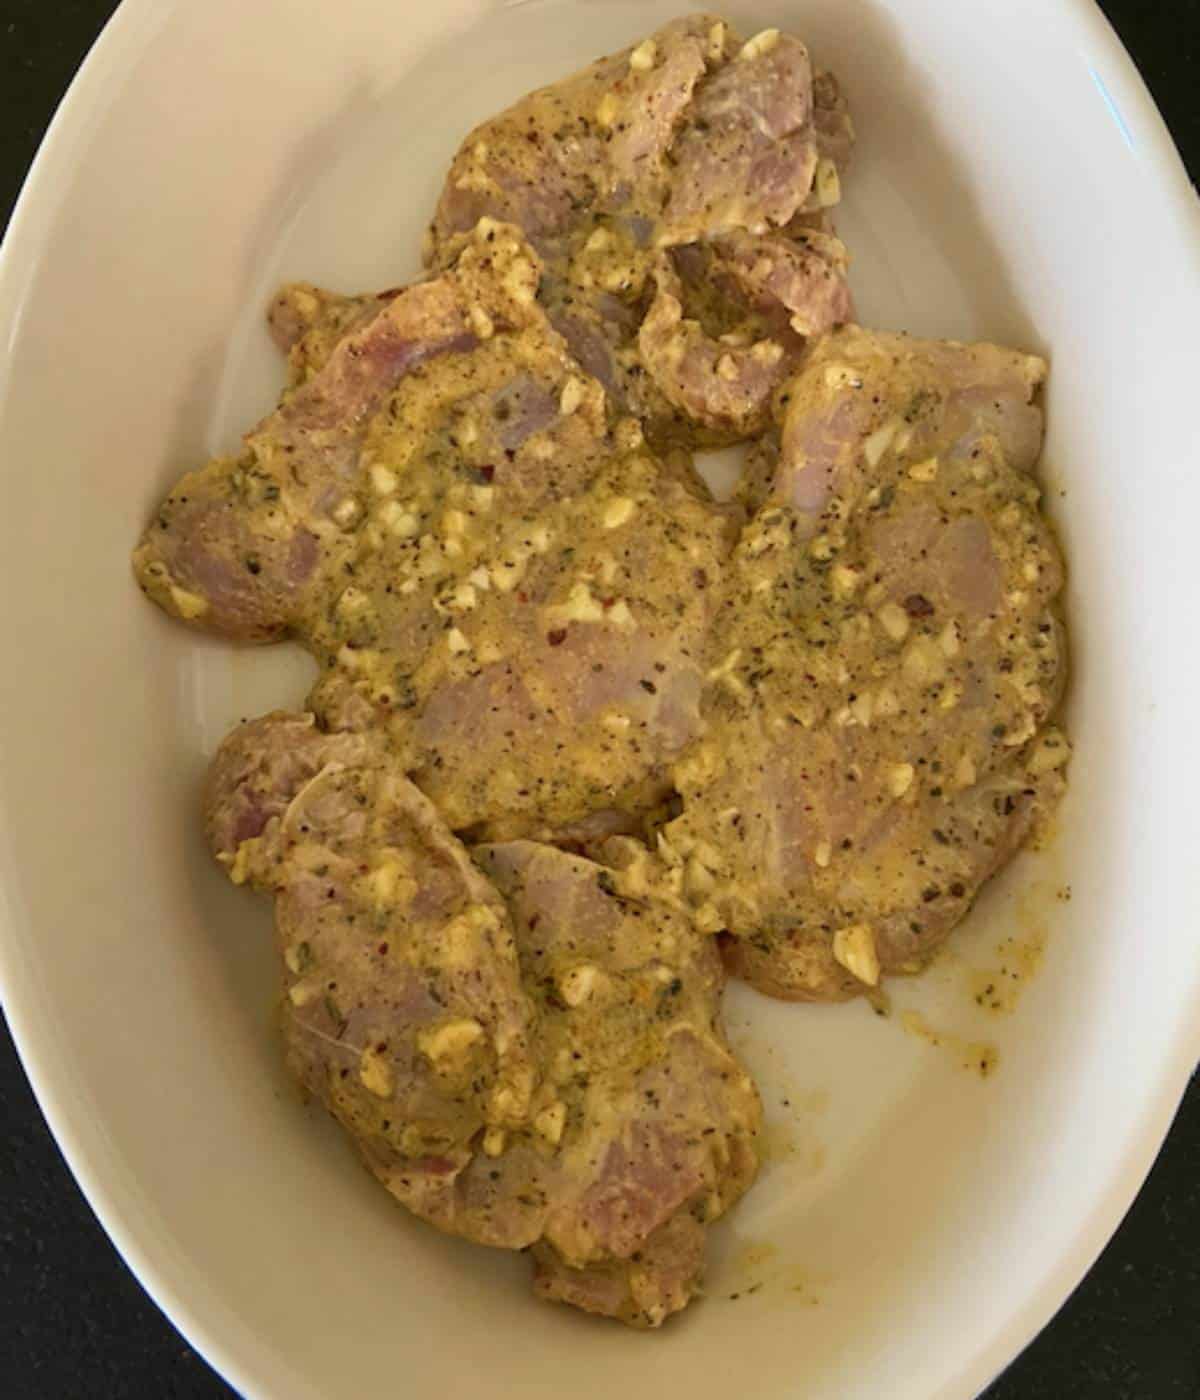 Raw chicken thighs in casserole dish.